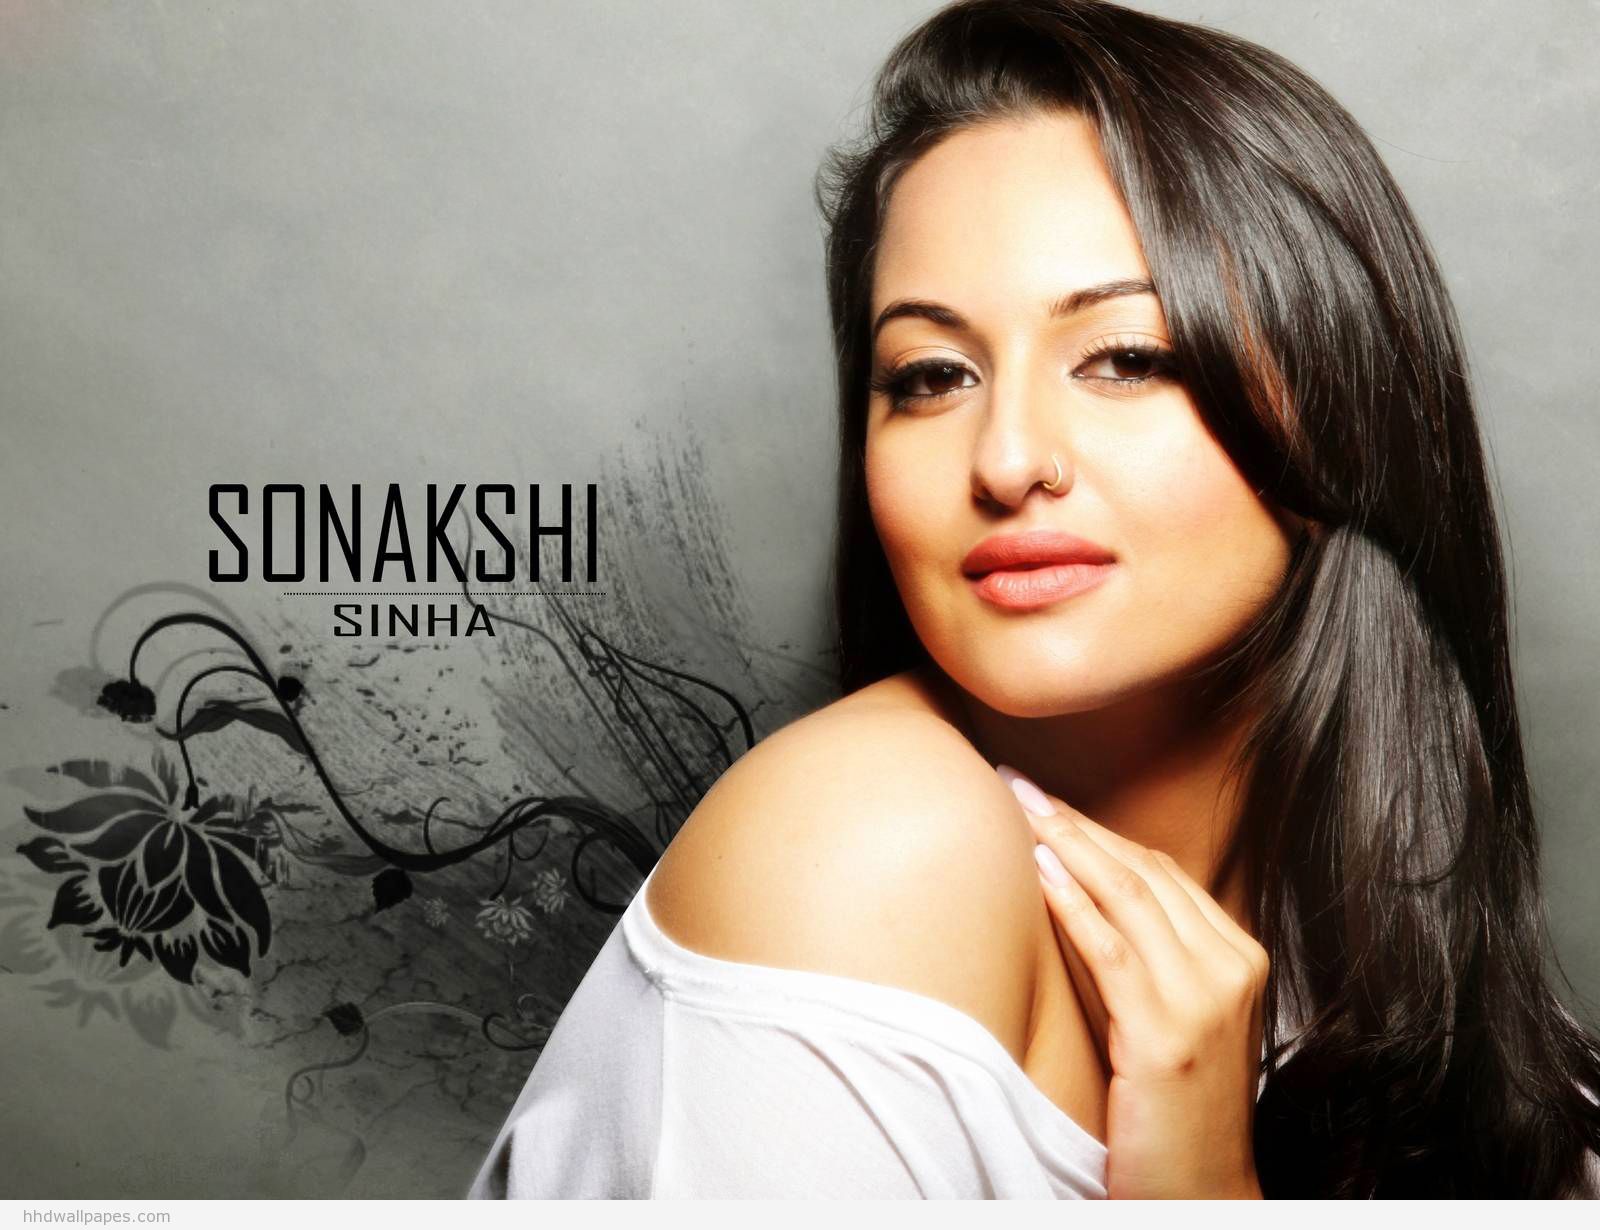 Sonakshi Sinha Wallpapers